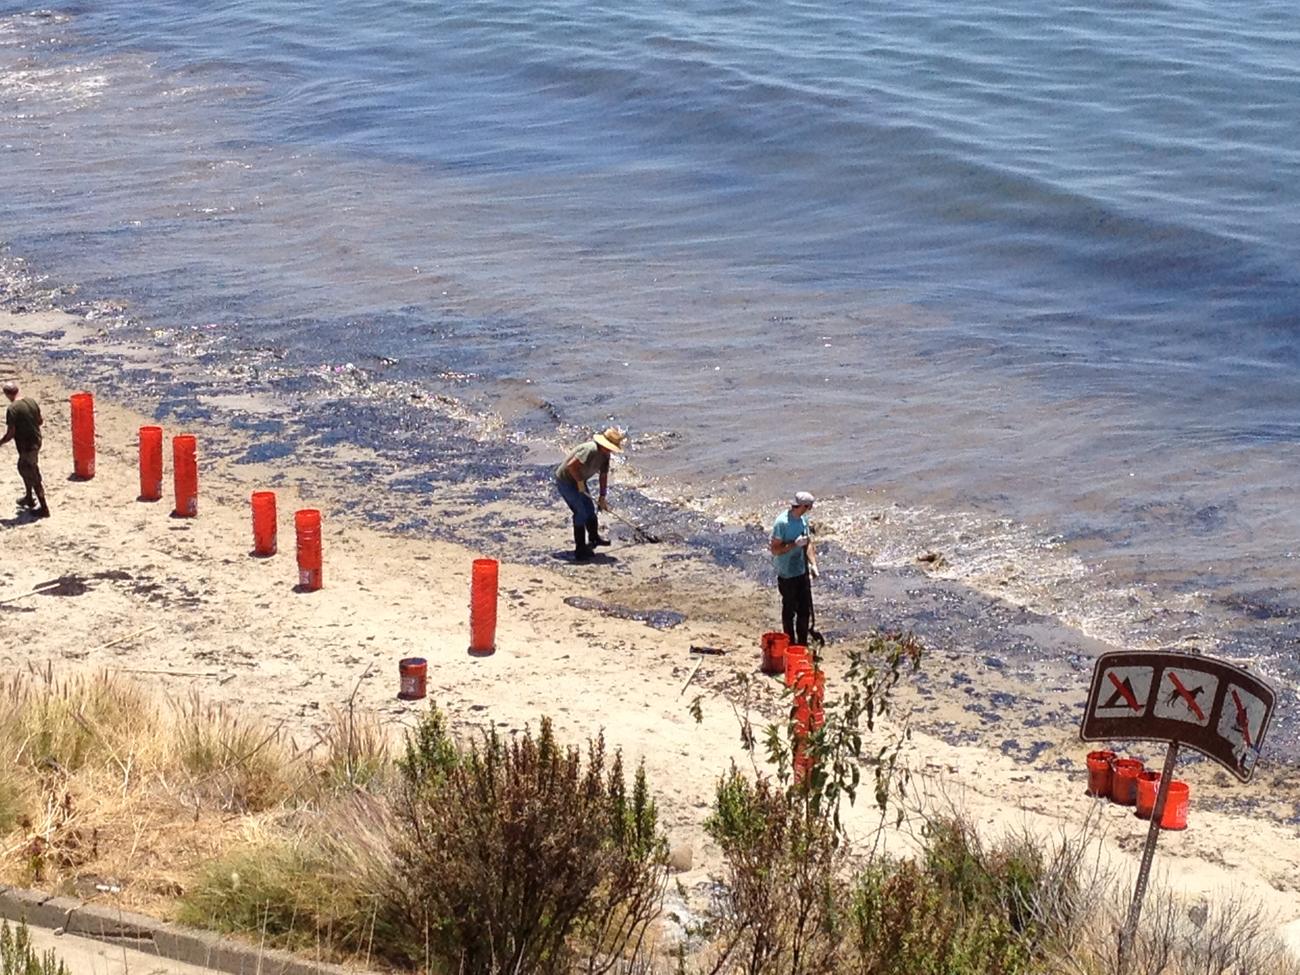 Santa Barbara oil spill stains beaches